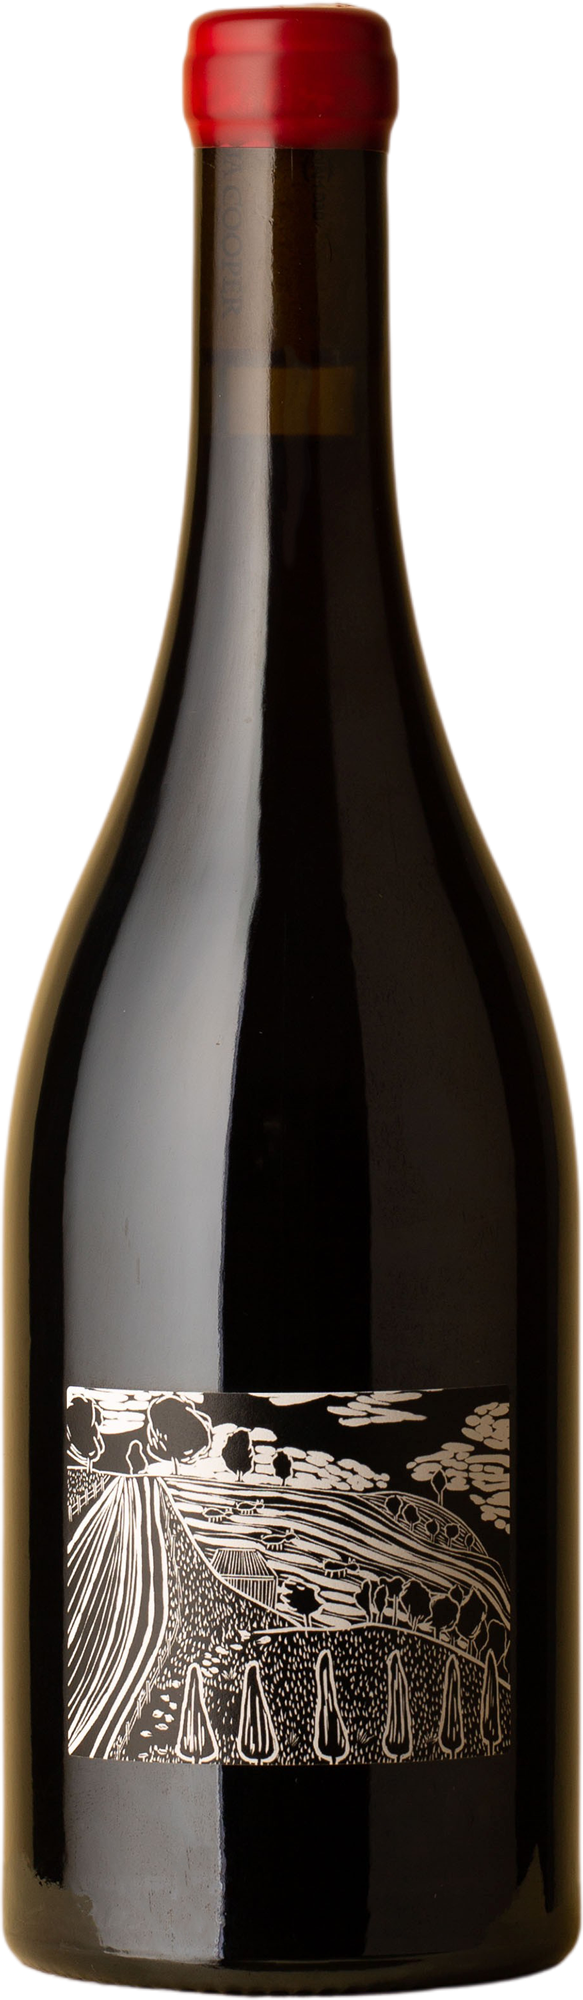 Joshua Cooper - Doug's Vineyard Pinot Noir 2019 Red Wine